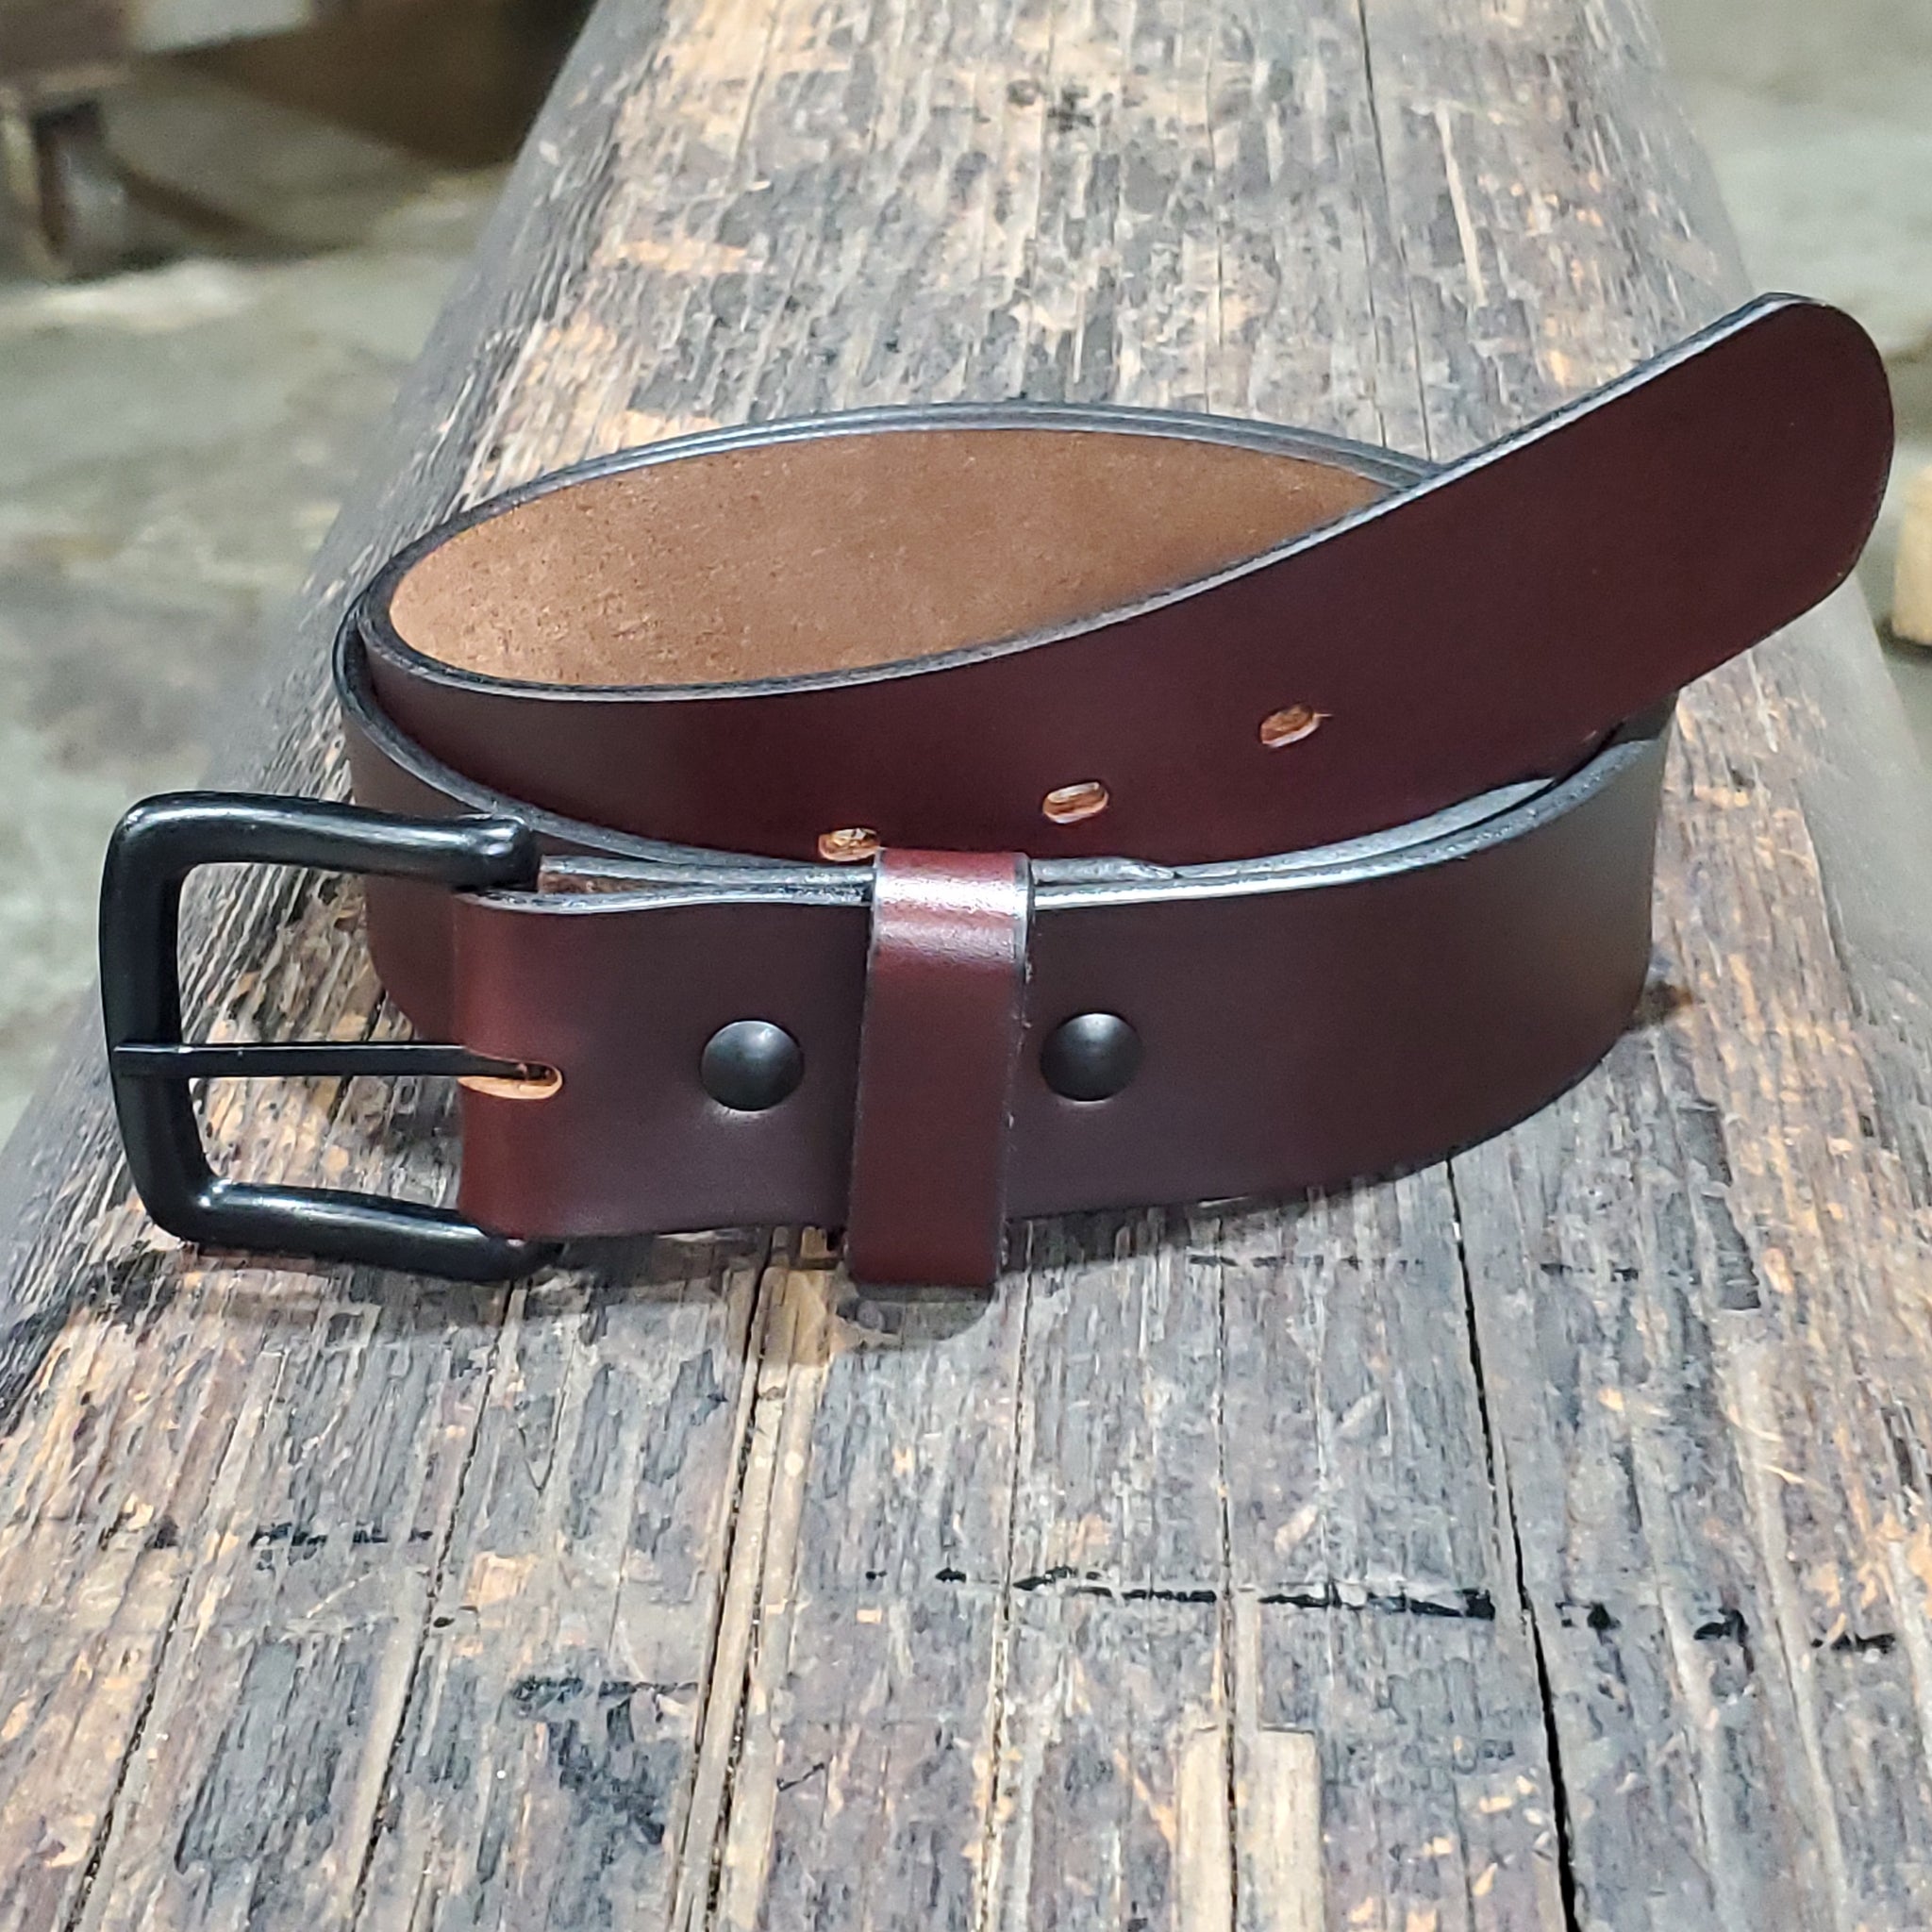 Leather Belt, Thick Men's Full Grain